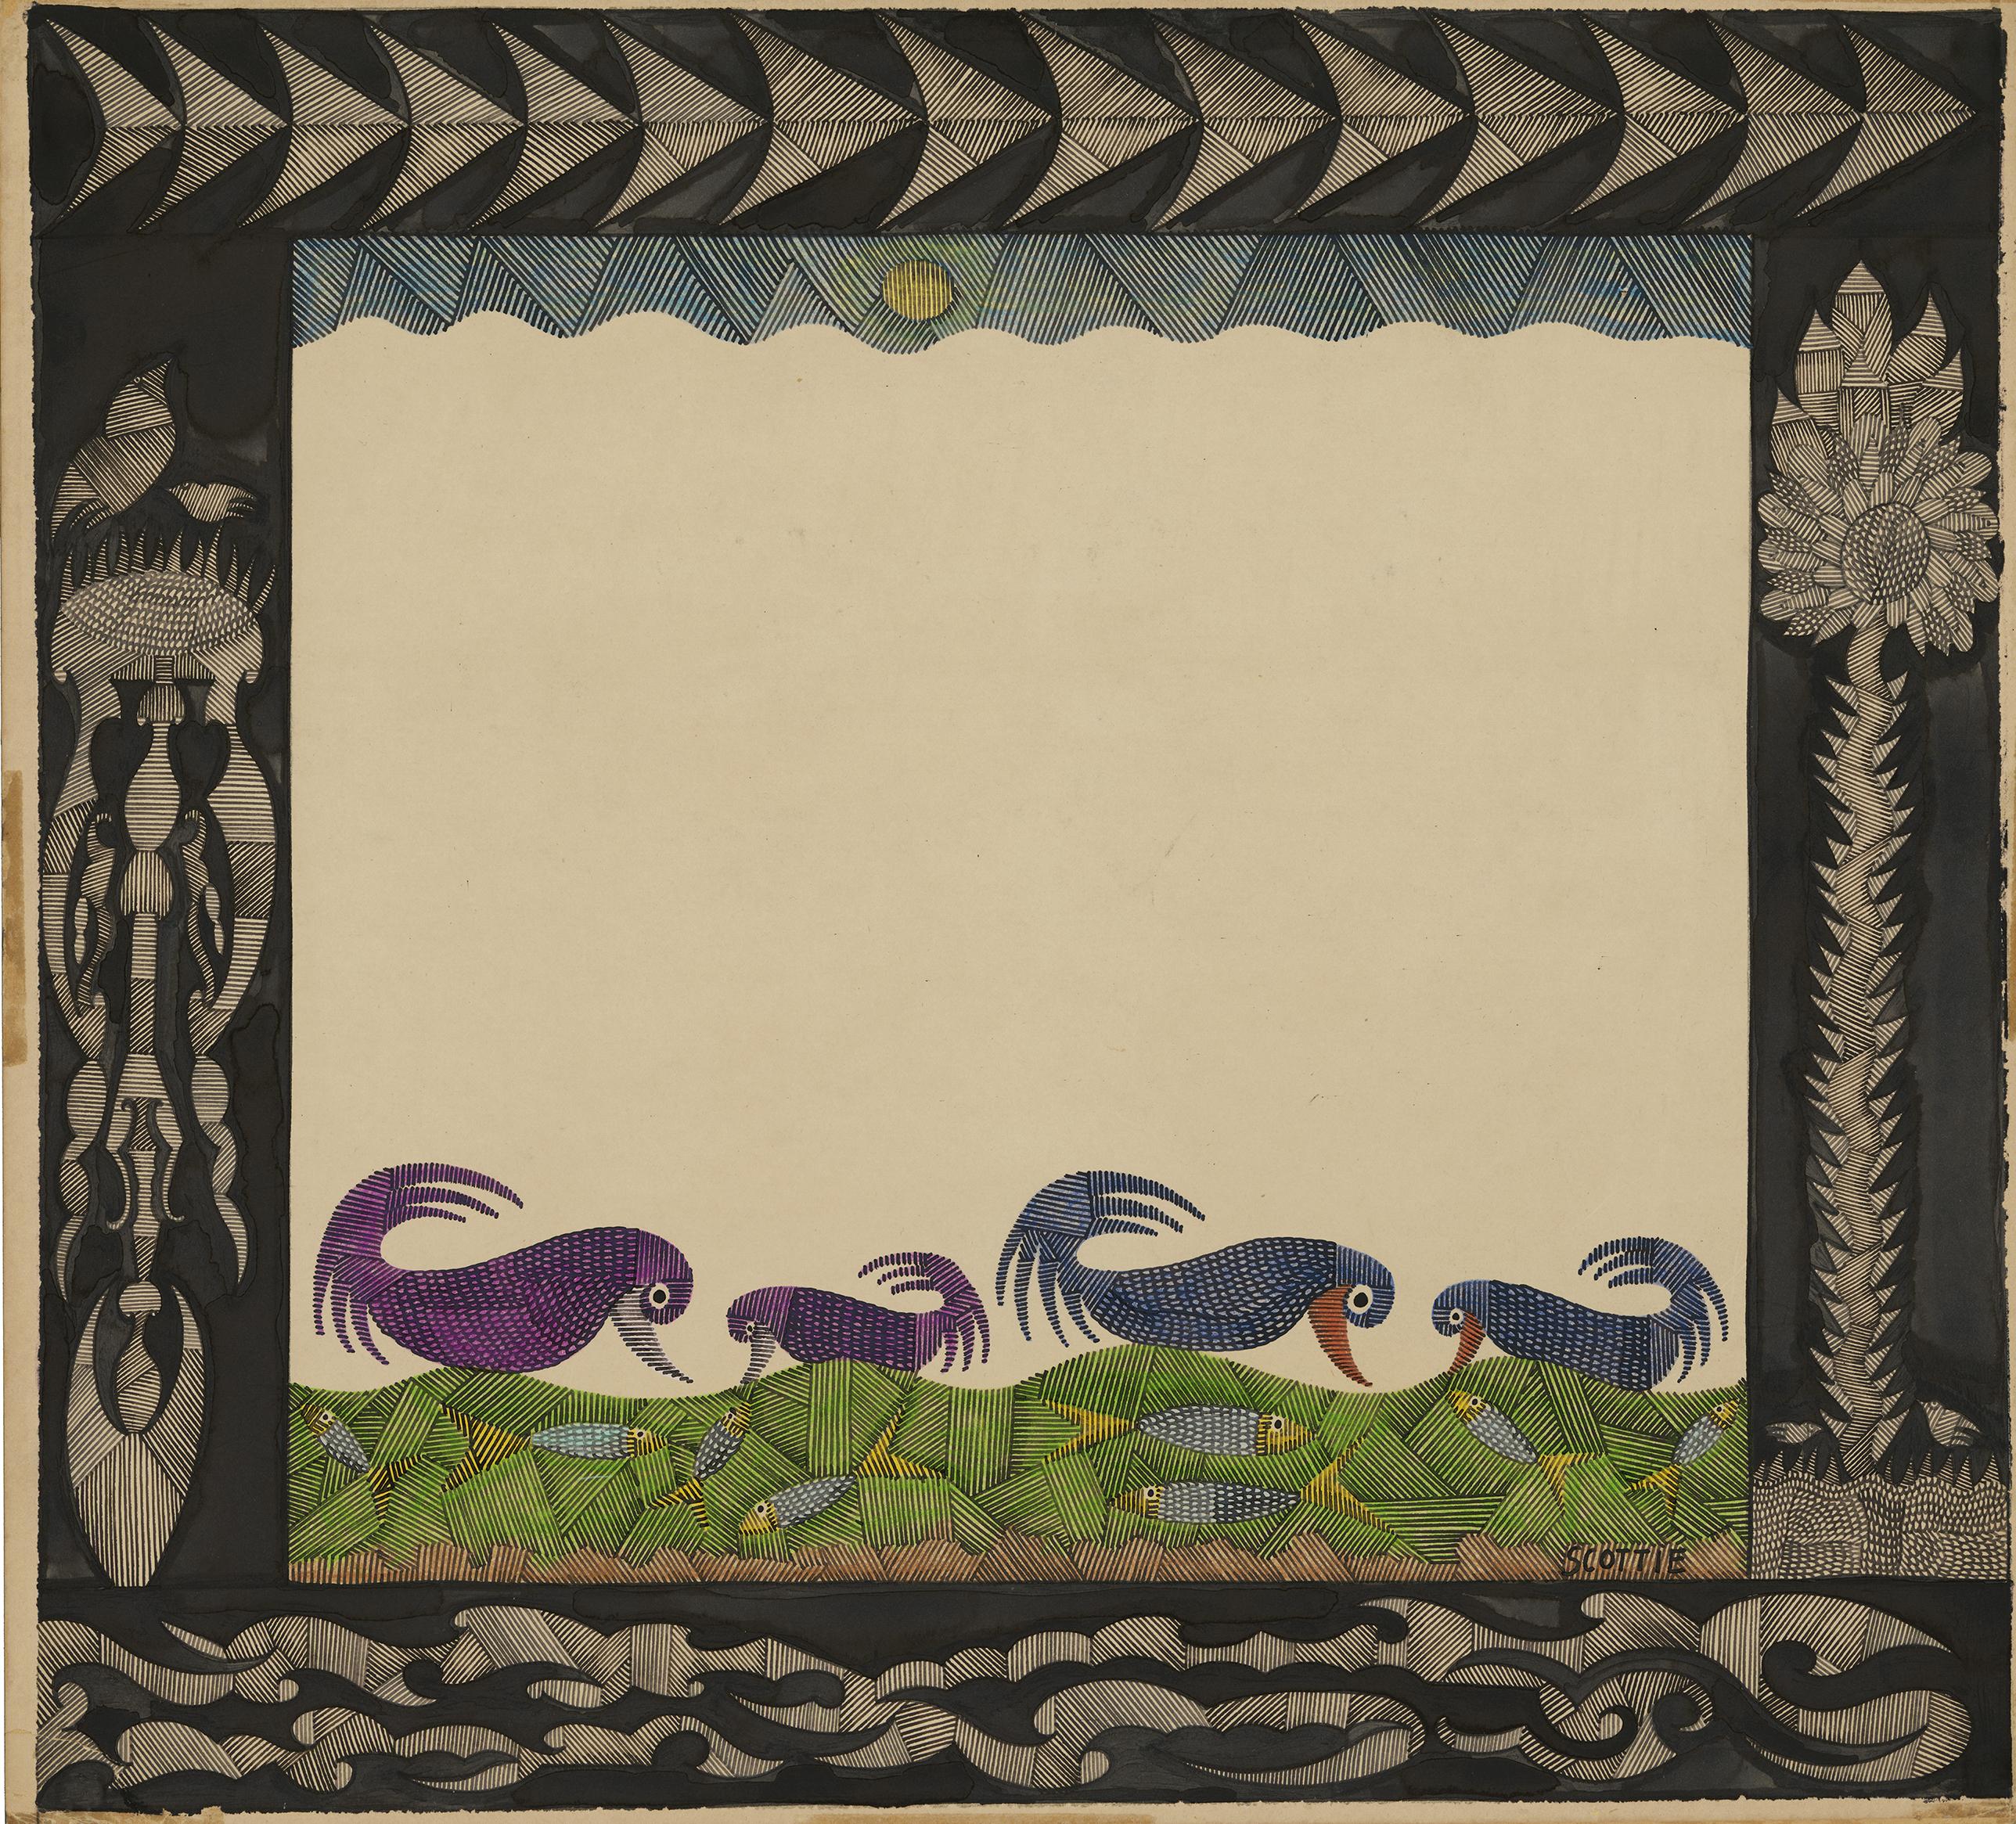 Scottie Wilson-Feeding time, 1950, encre de Chine et crayon de couleur sur carton, 50,8 x 55,5 cm. [AN – Collection de l’Art Brut, Lausanne]